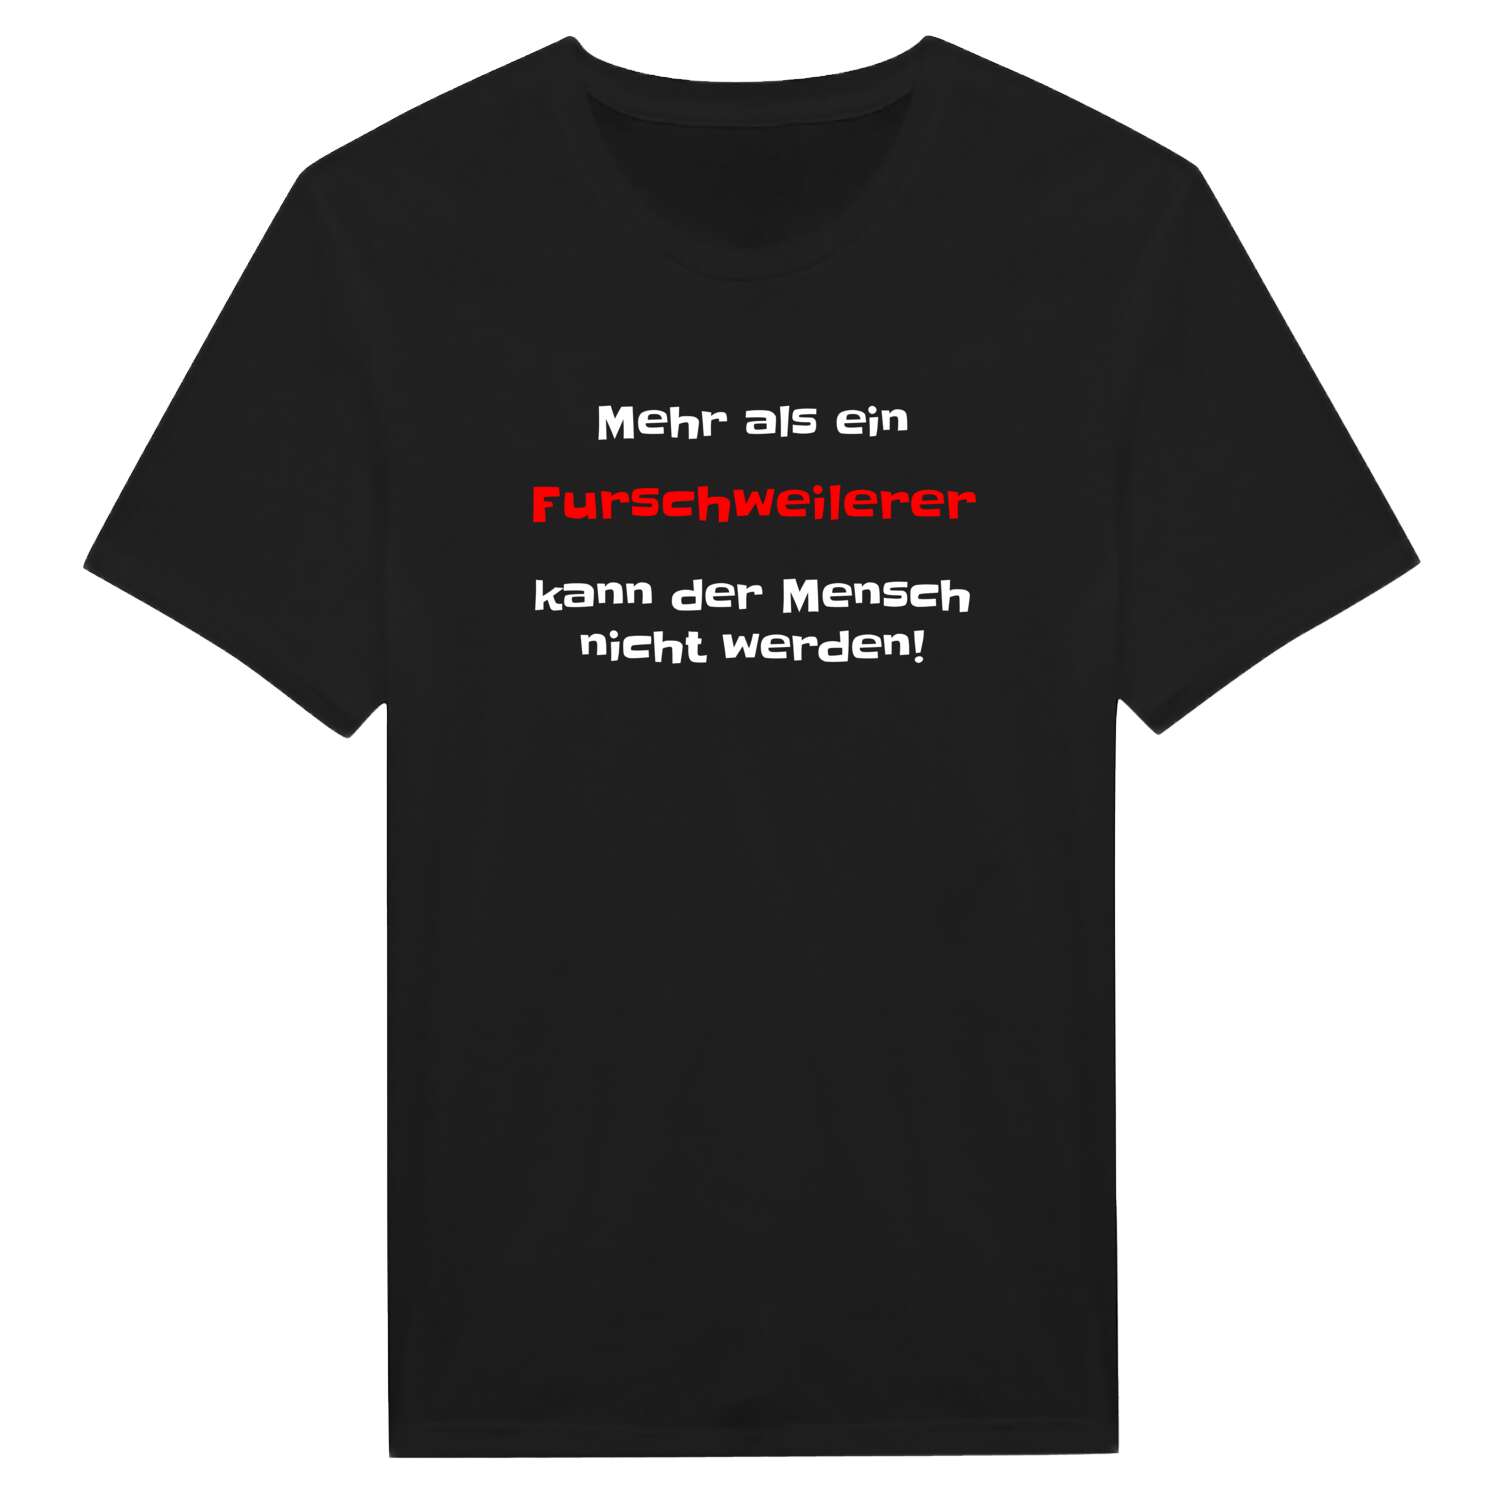 Furschweiler T-Shirt »Mehr als ein«